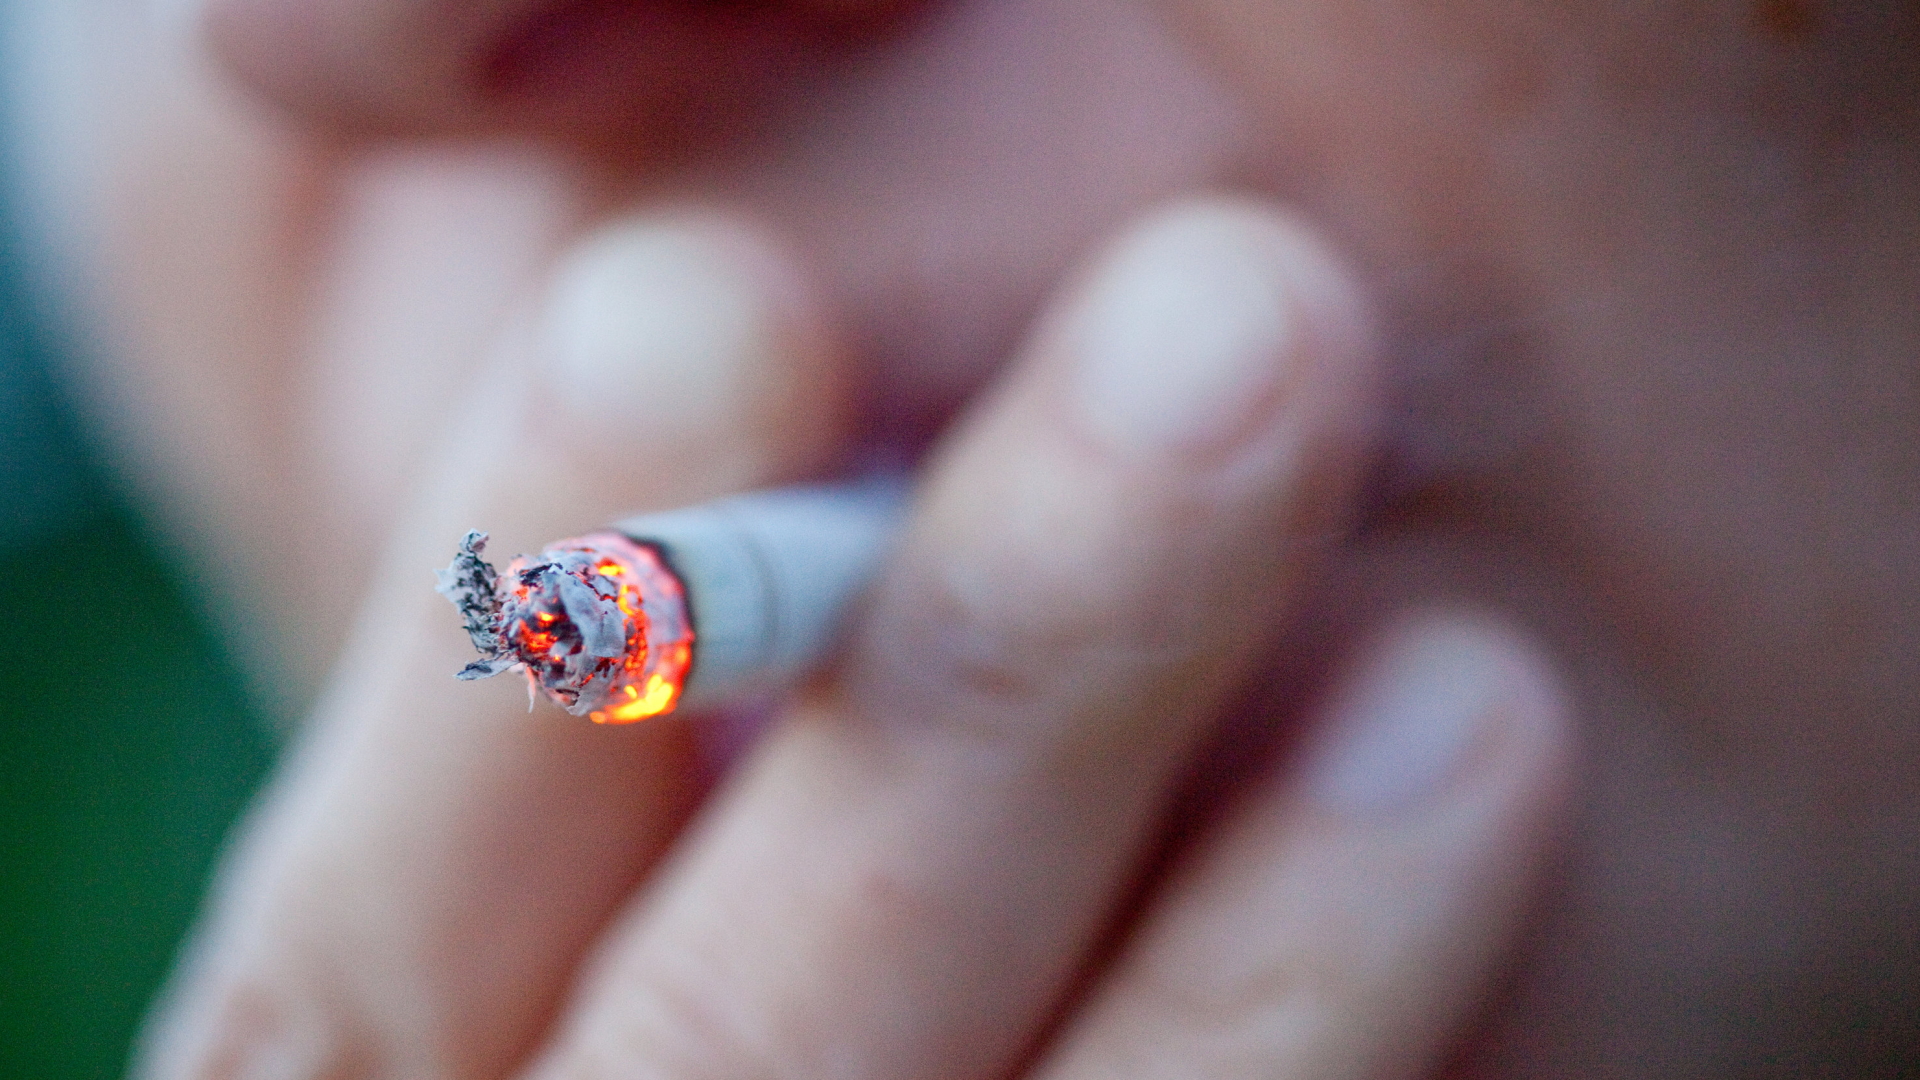 Mann raucht eine Zigarette | Bildquelle: dpa